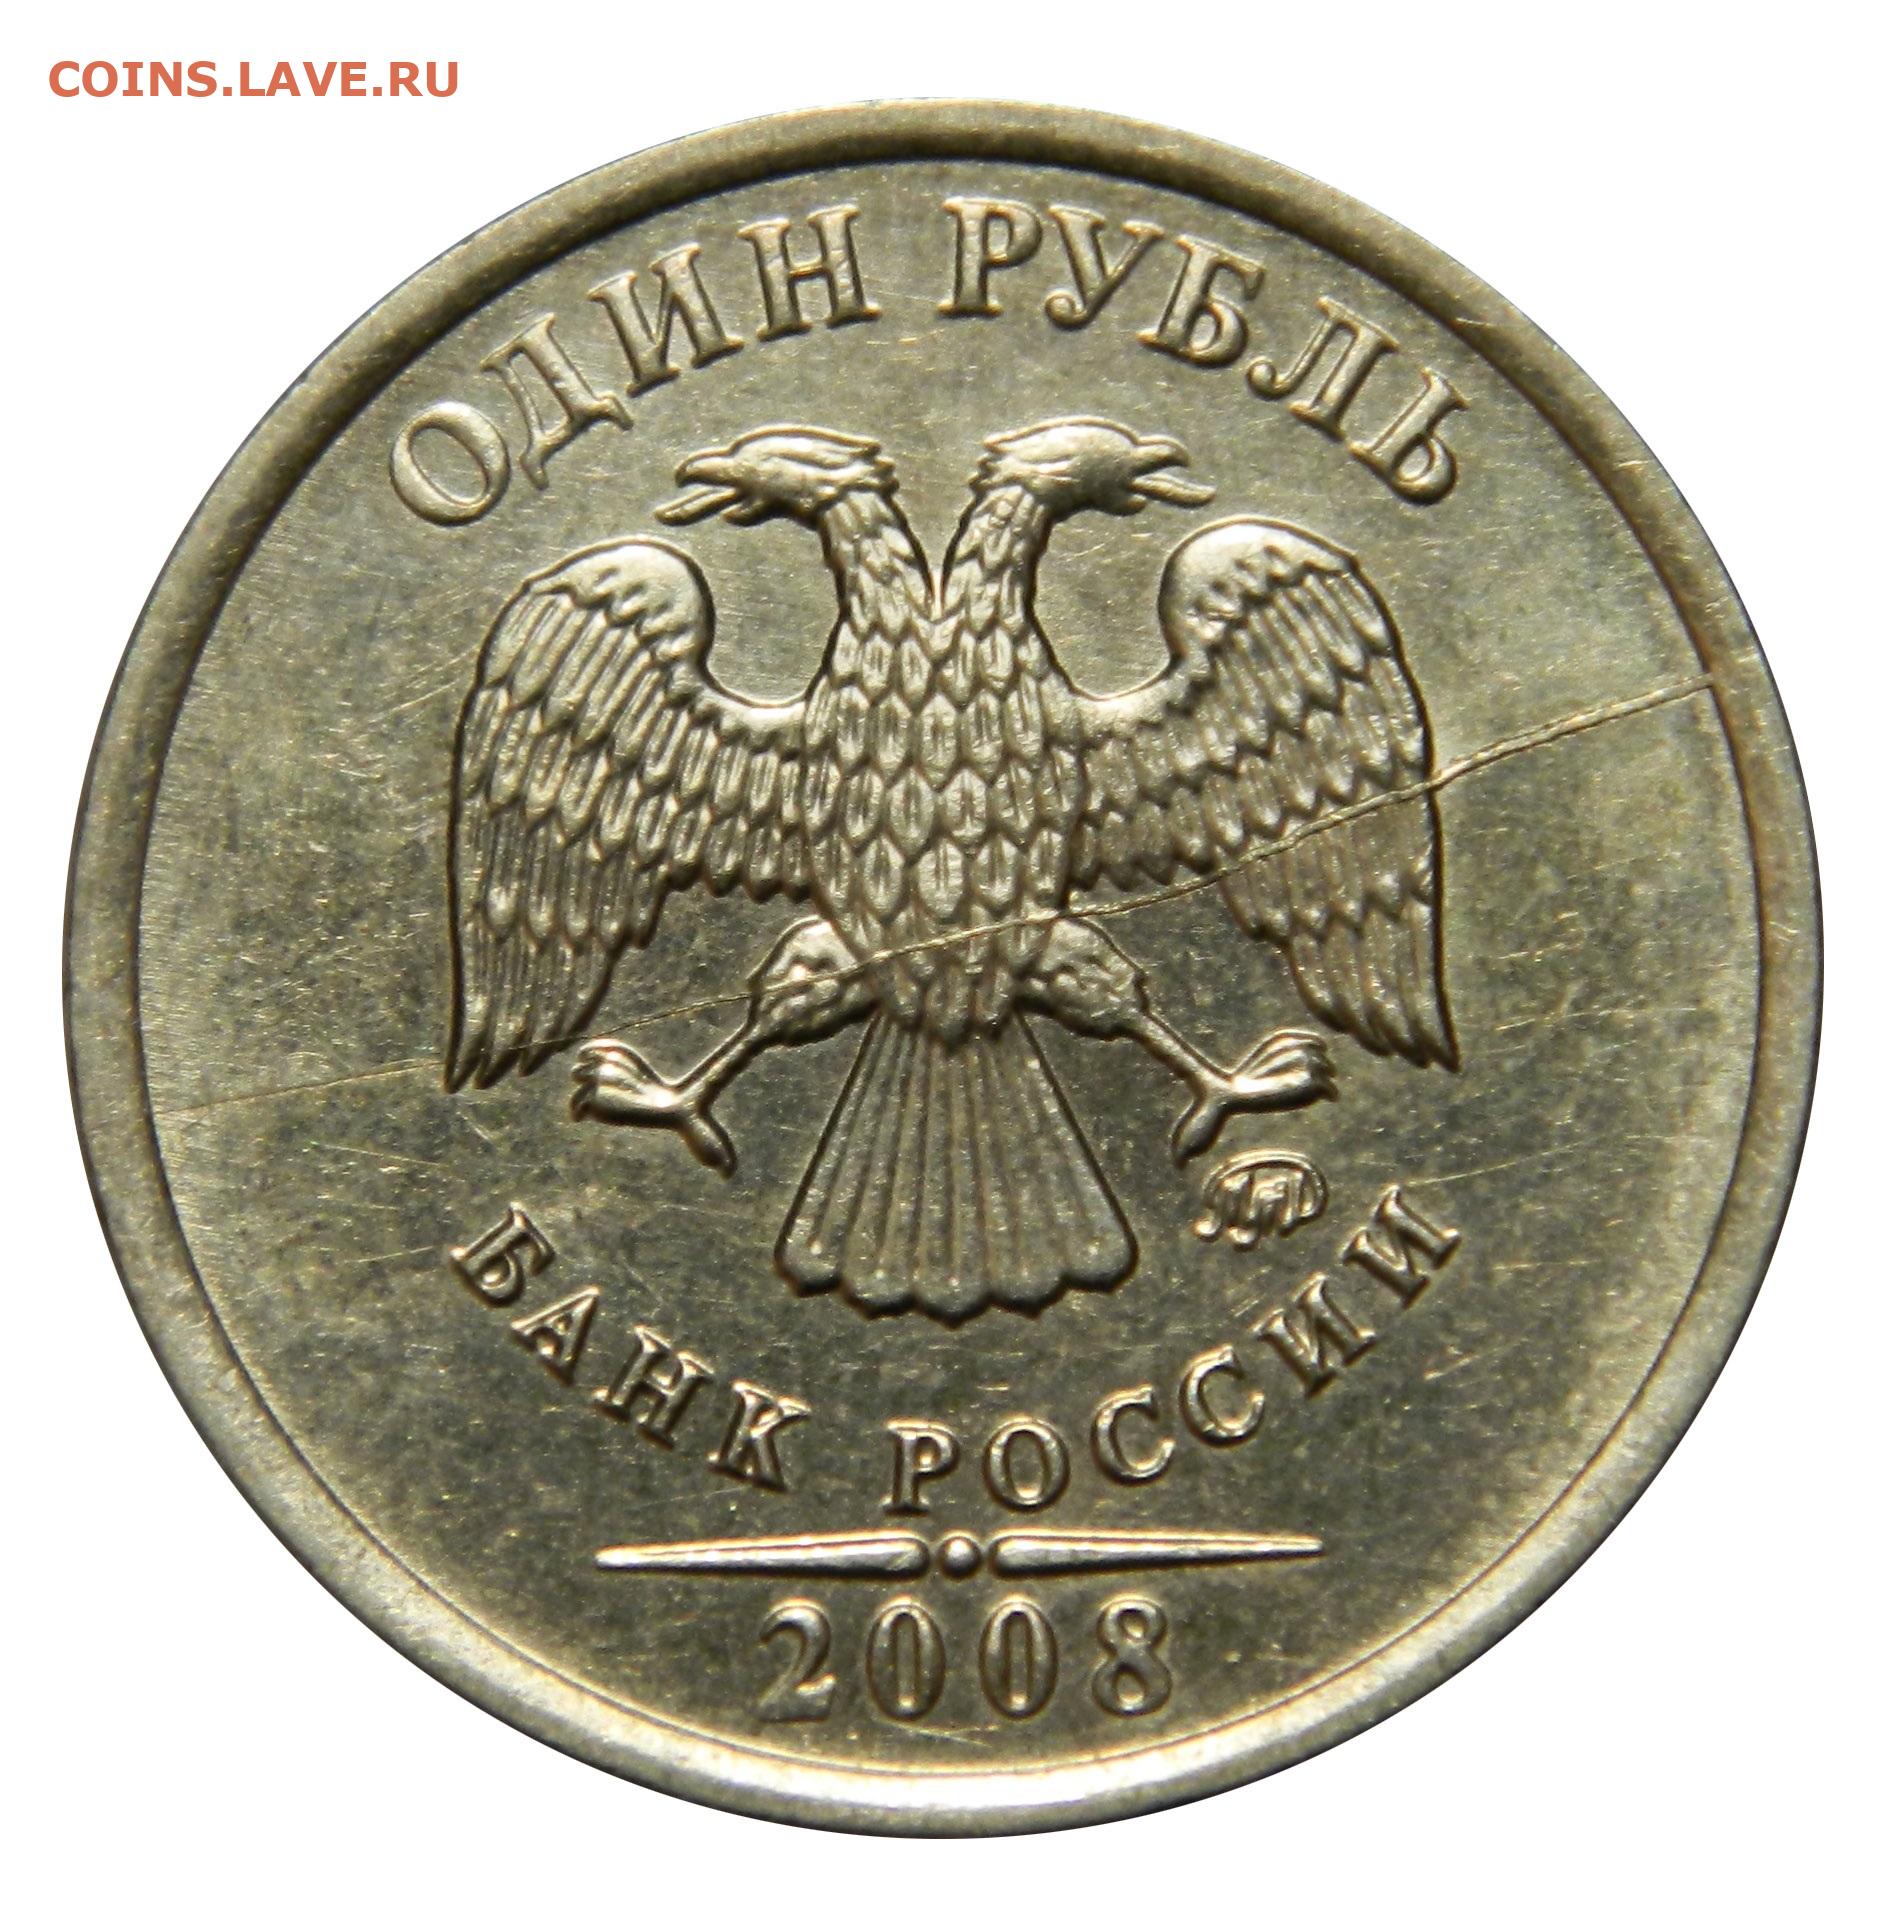 1 руб 2015 года. Монета 1 рубль 2015 год. Биметалл 1 рубль 2015. Монета РФ 1 рубль 1997 года ММД. Современный рубль.